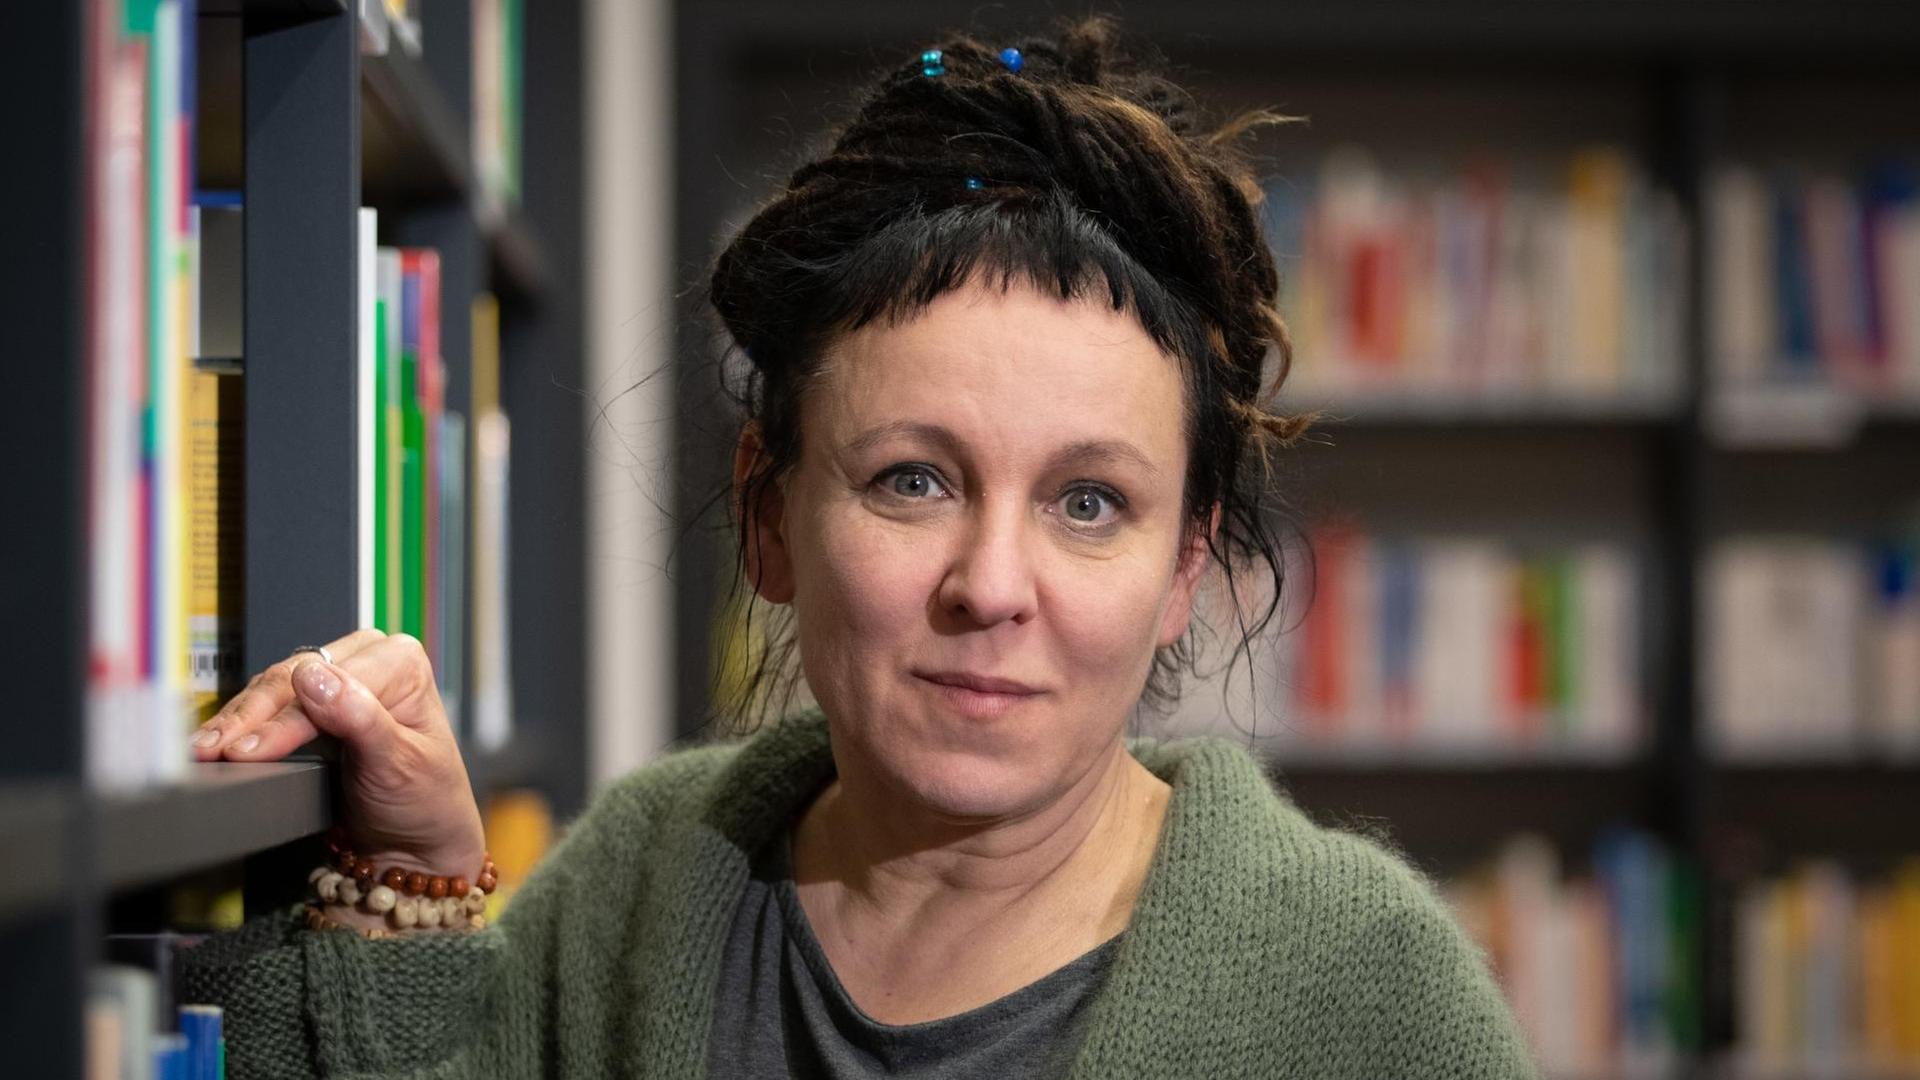 Die polnische Autorin Olga Tokarczuk steht an einem Bücherregal.